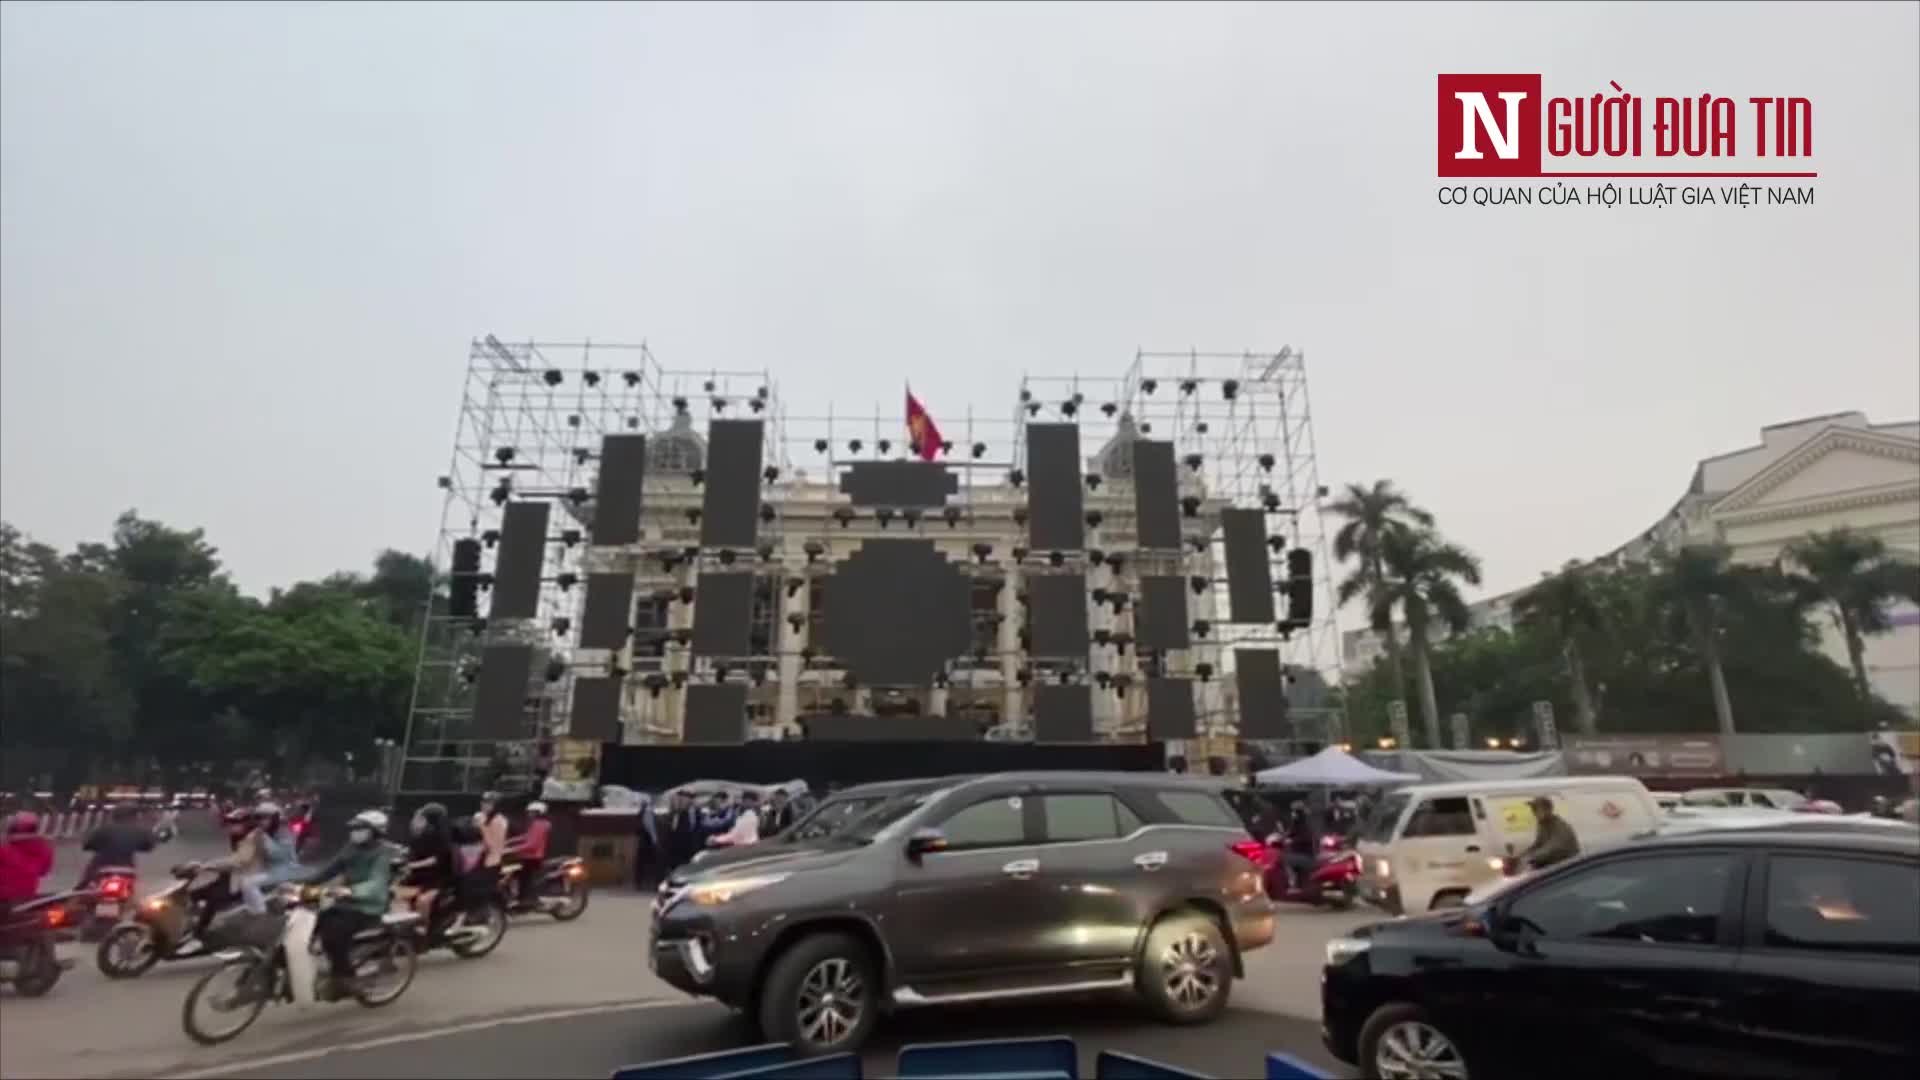 Cận cảnh sân khấu chào năm mới 2020 ở Hà Nội